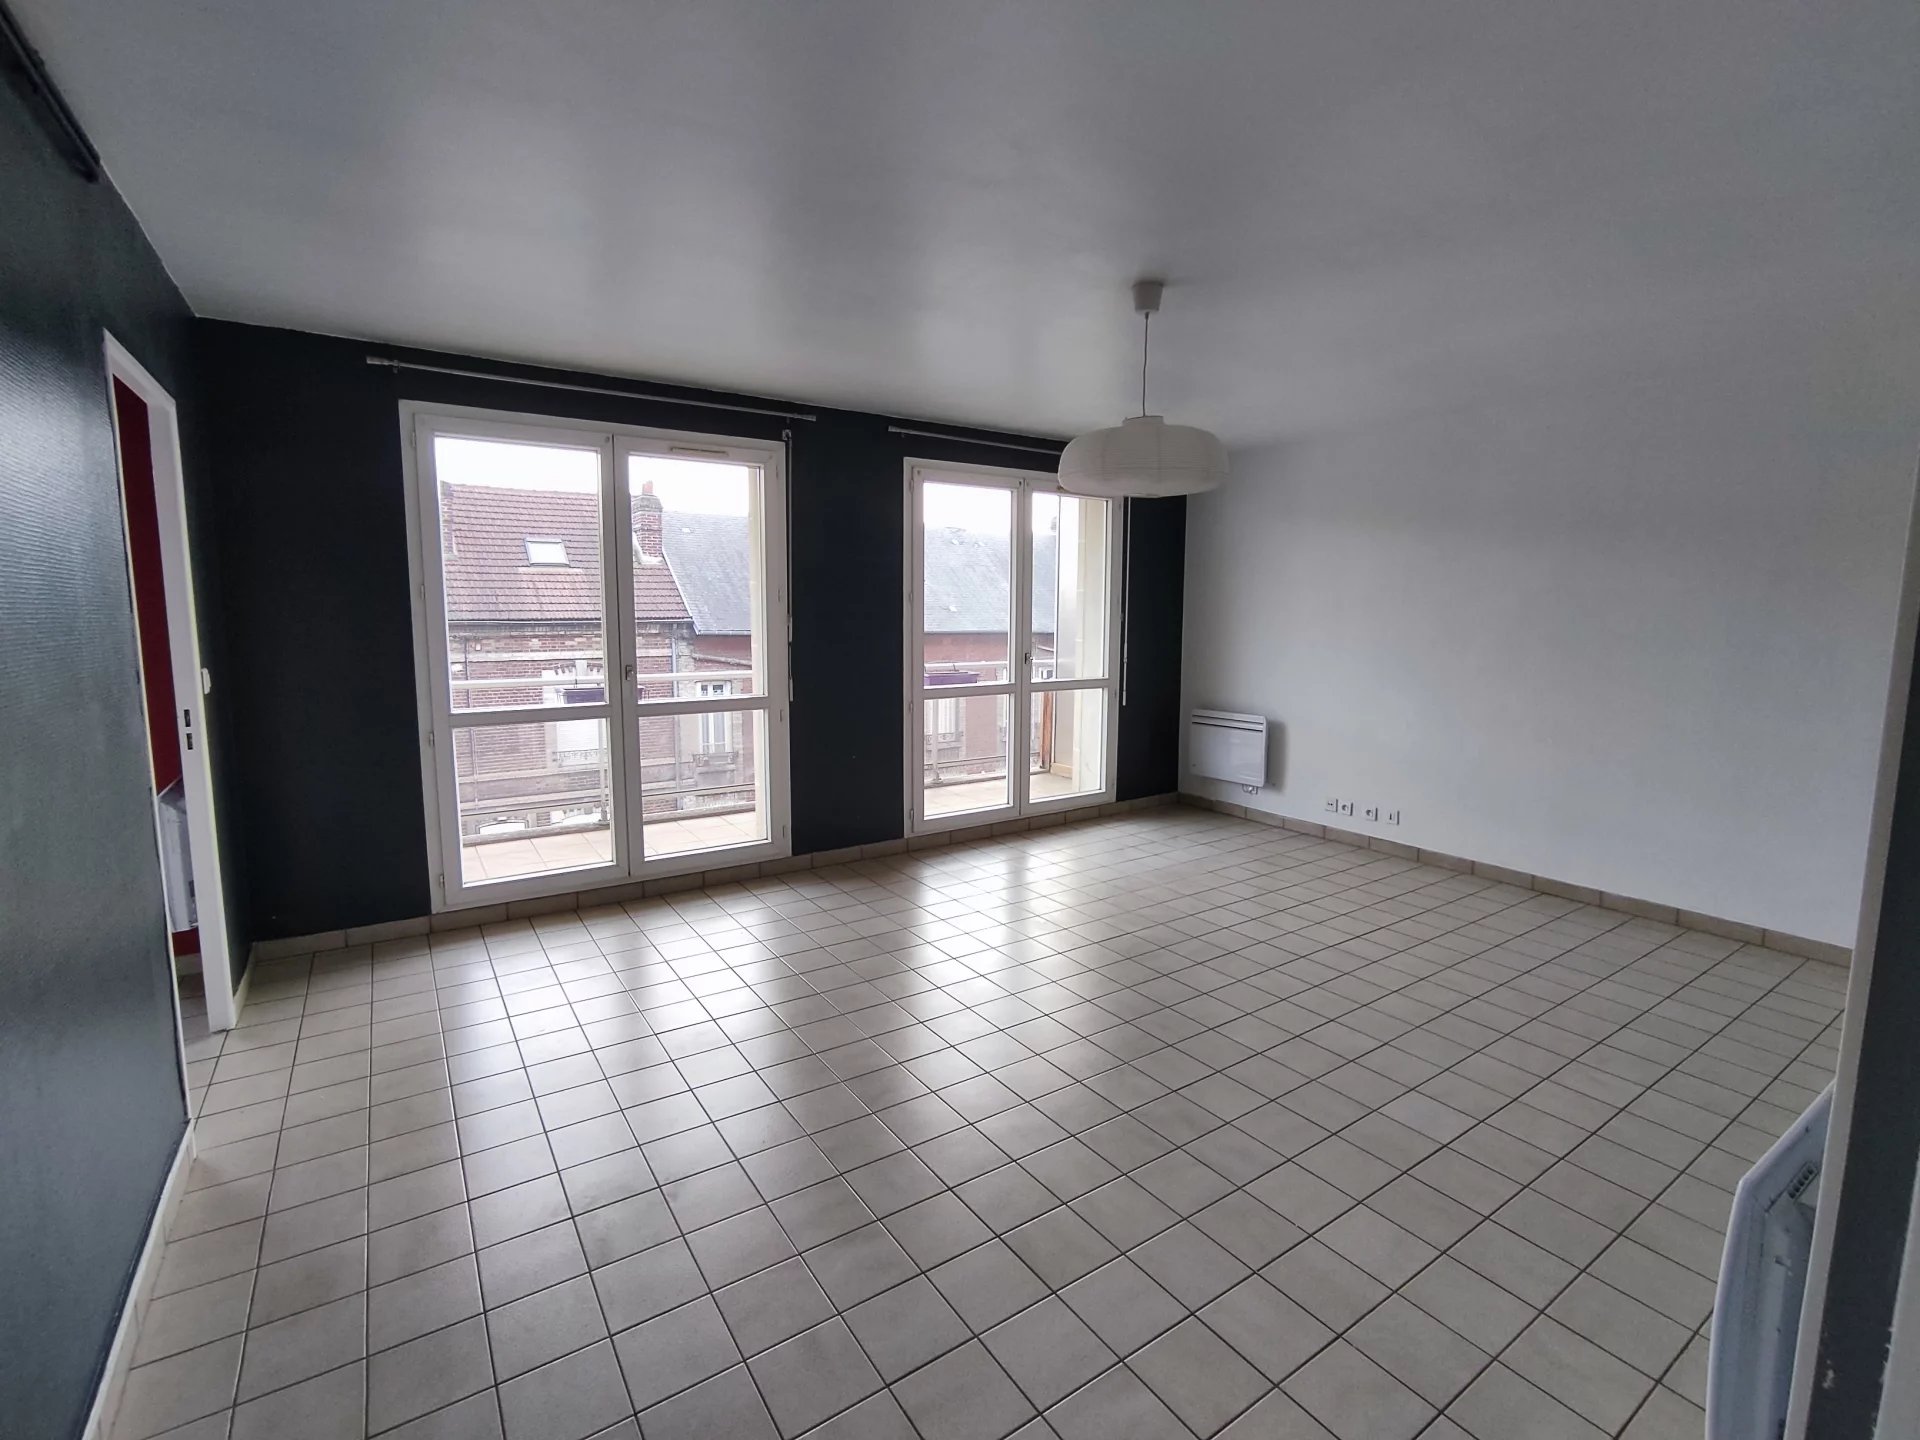 Appartement 63 m² CREIL 820 € CC